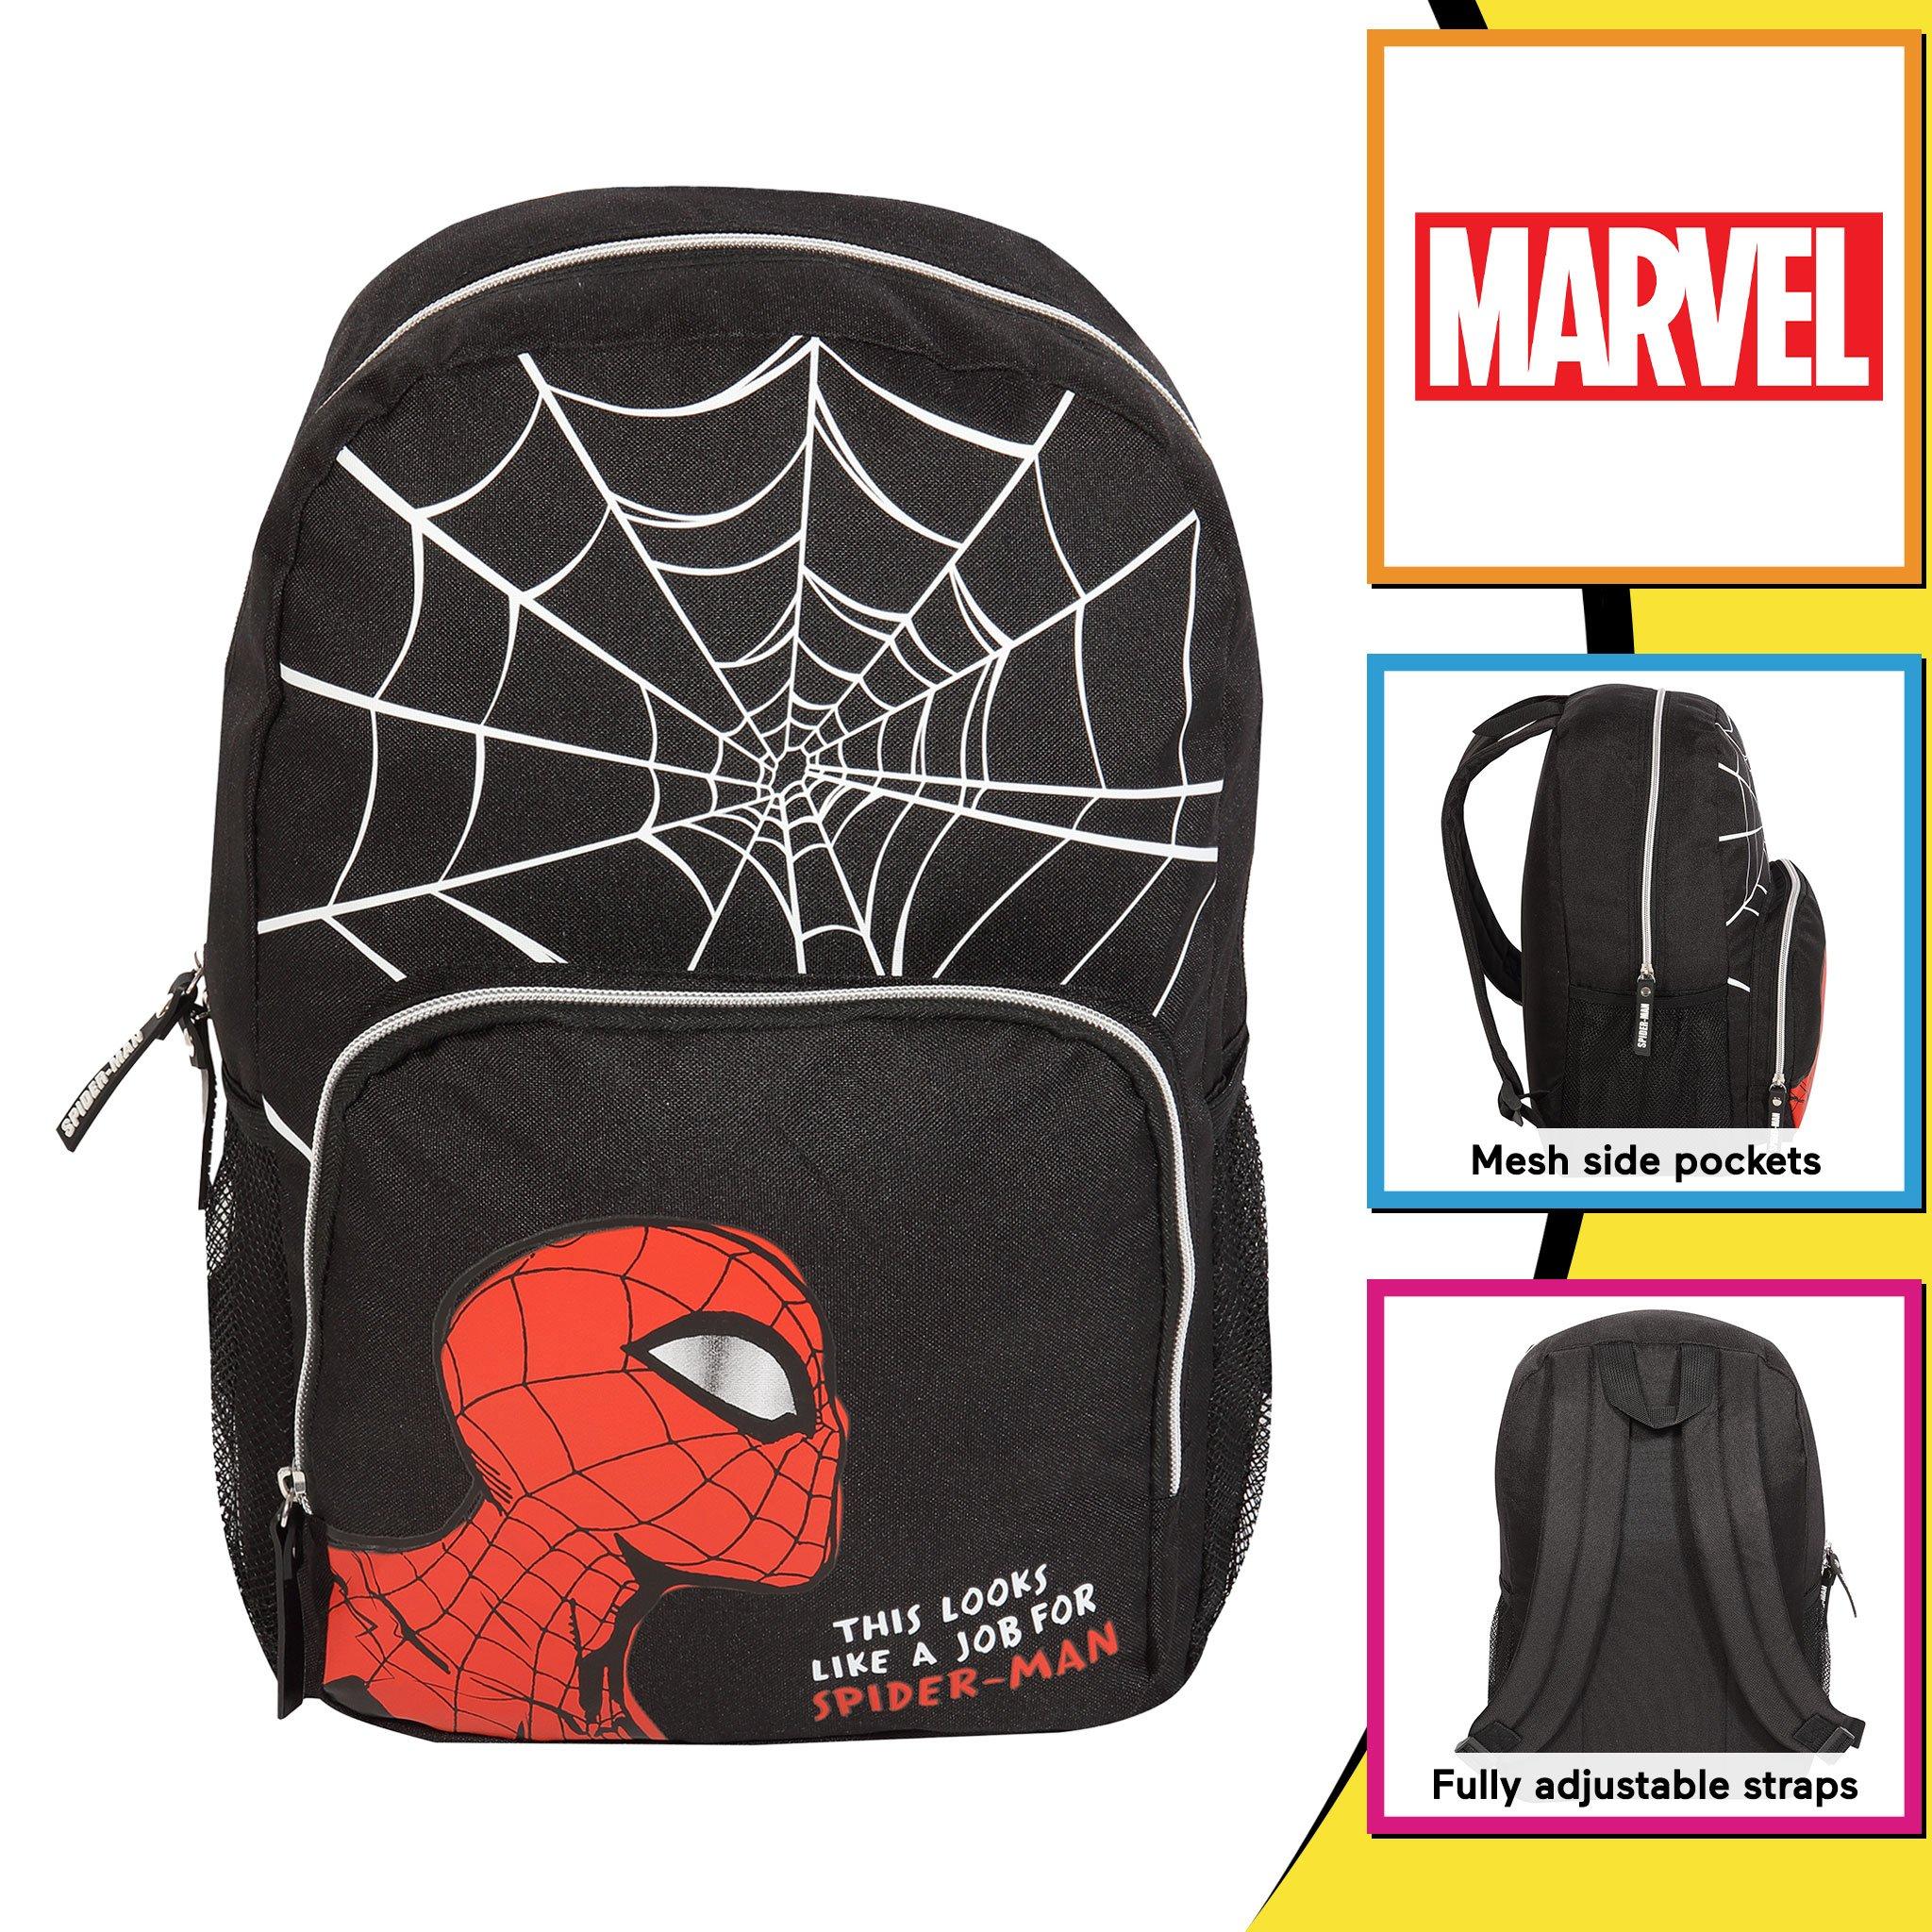 Рюкзак с веб-головой Comics Spiderman Marvel, черный футболка marvel avengers черная размер l